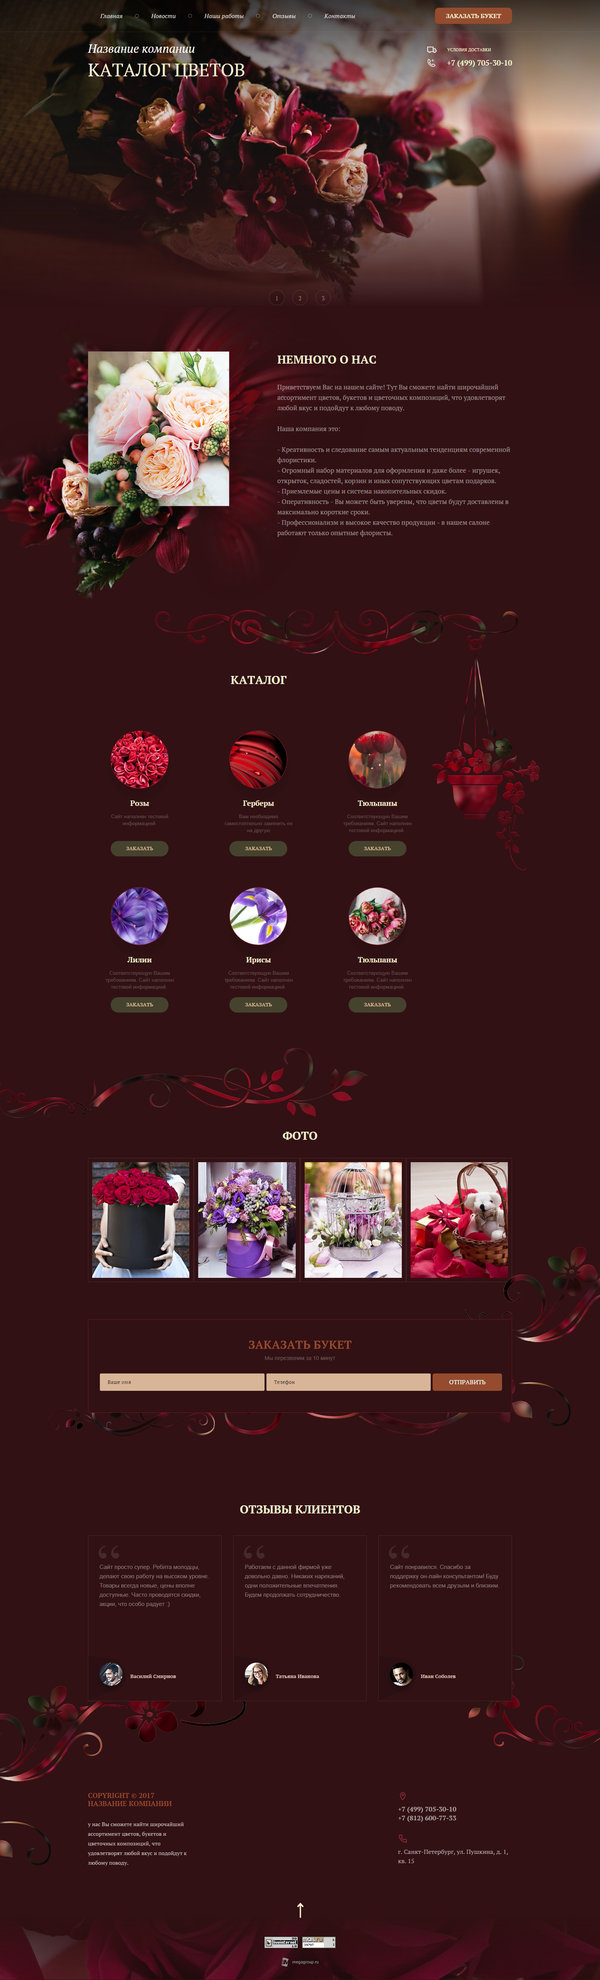 Готовый Сайт-Бизнес № 1945627 - каталог цветов (Десктопная версия)